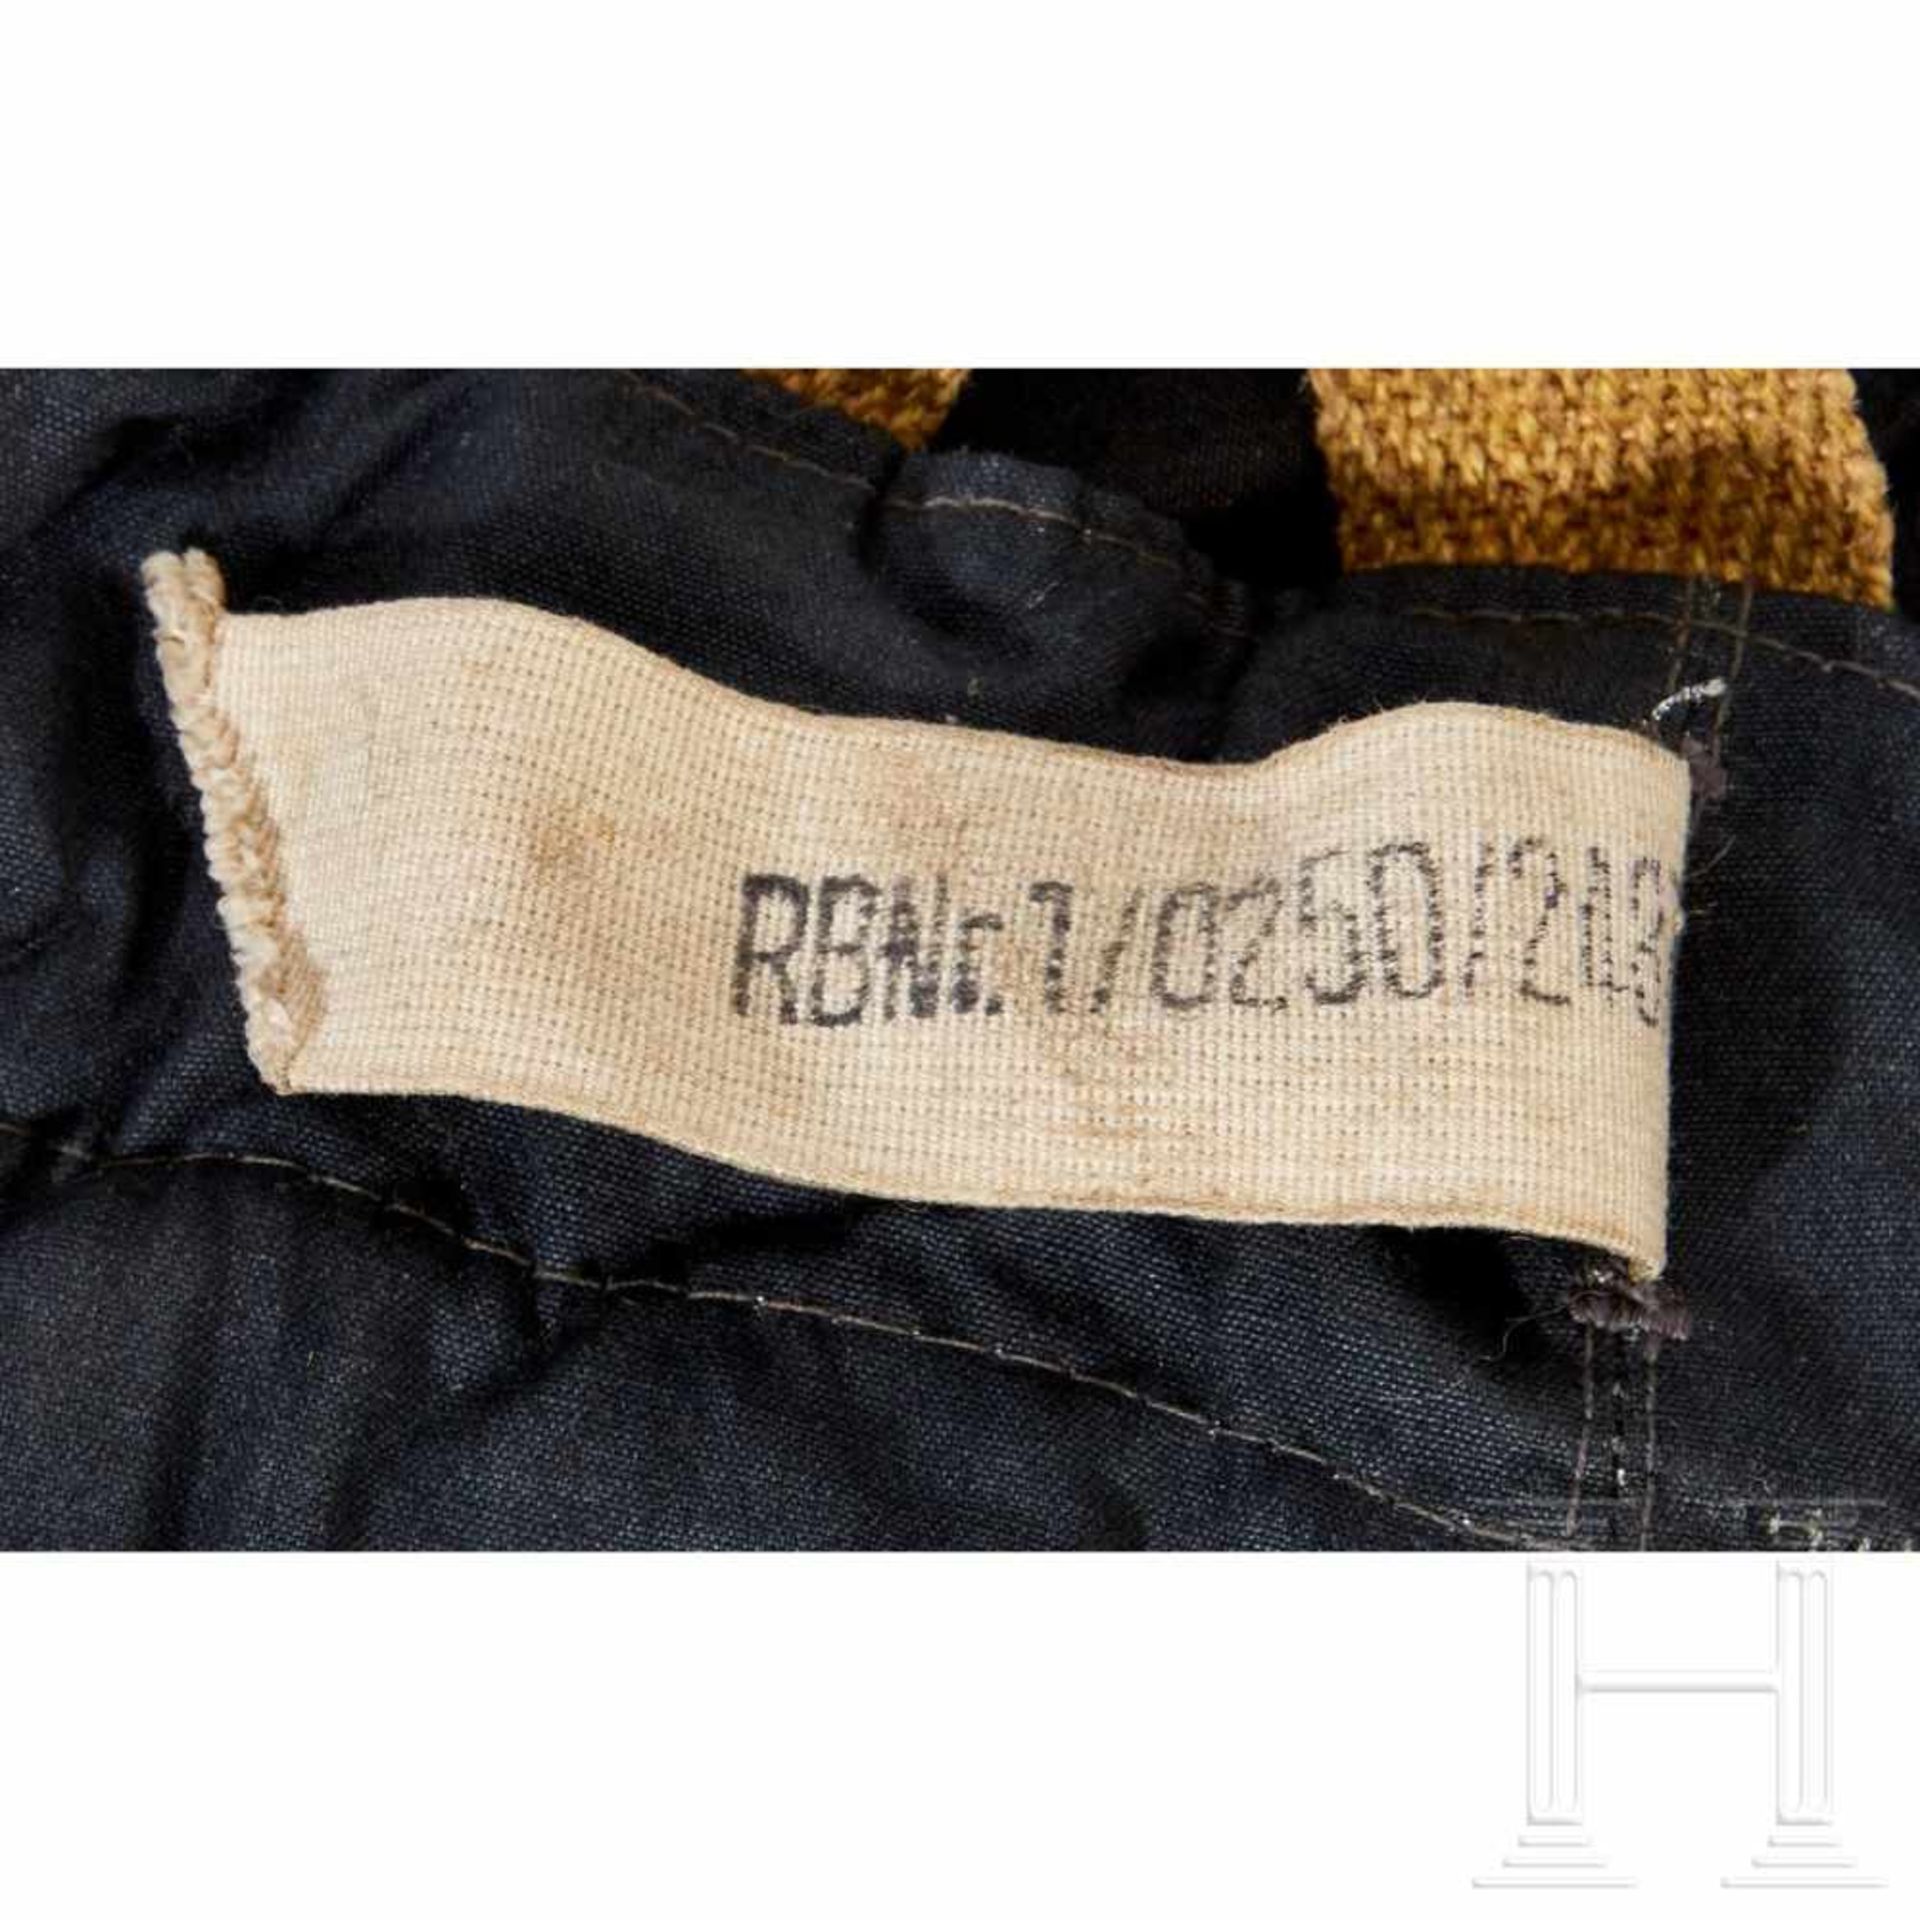 Winterhose für das fliegende PersonalBlue-grey woven cotton rayon fabric trousers, lined in dark - Bild 6 aus 6